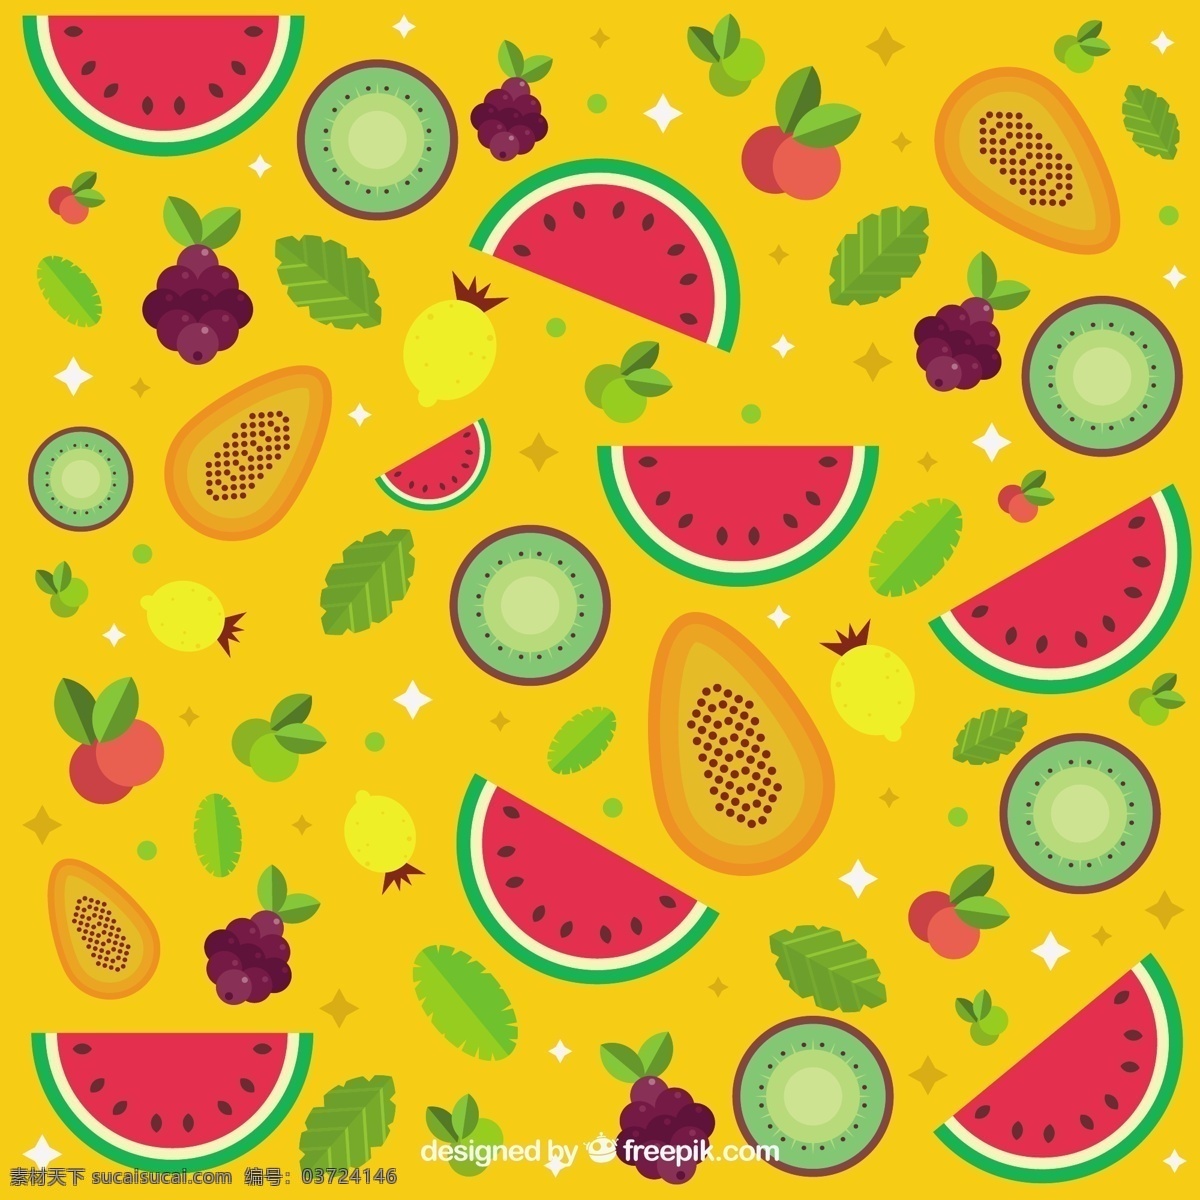 五颜六色 水果 背景 食品 夏天 平坦 丰富多彩 热带 平面设计 健康 吃 饮食 葡萄 健康食品 营养 西瓜 猕猴桃 黄色